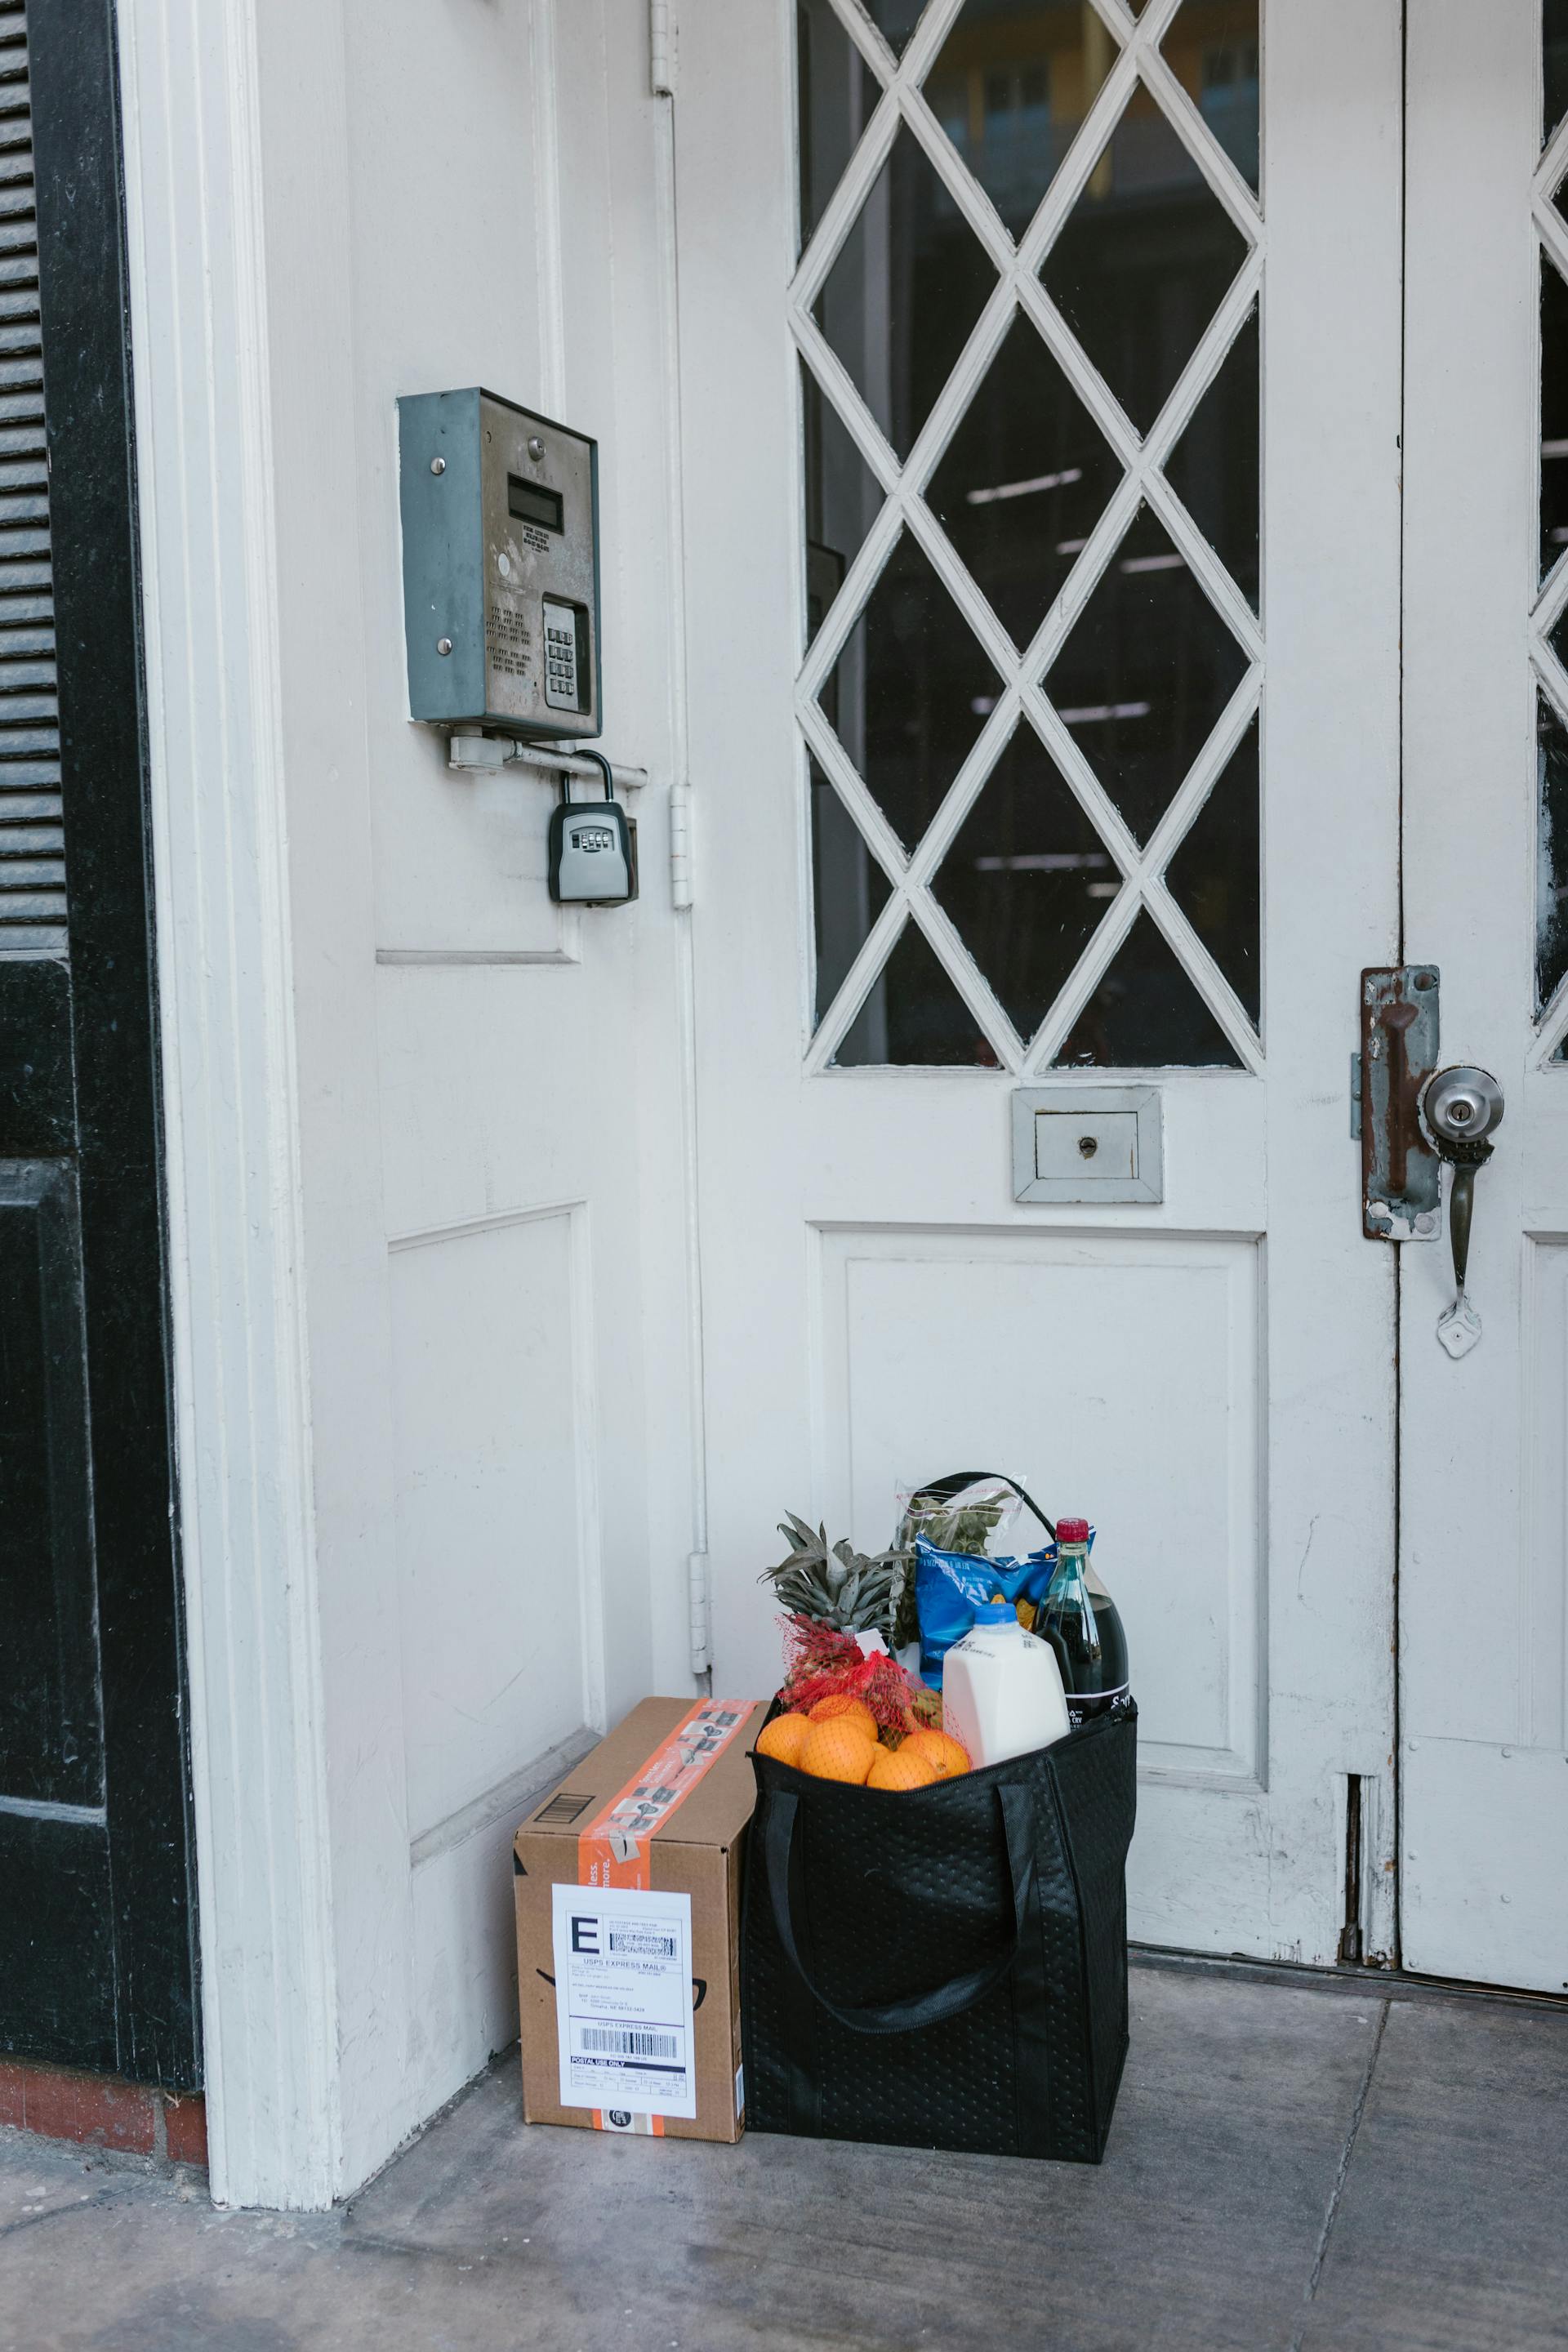 Food packages at the doorway | Source: Pexels